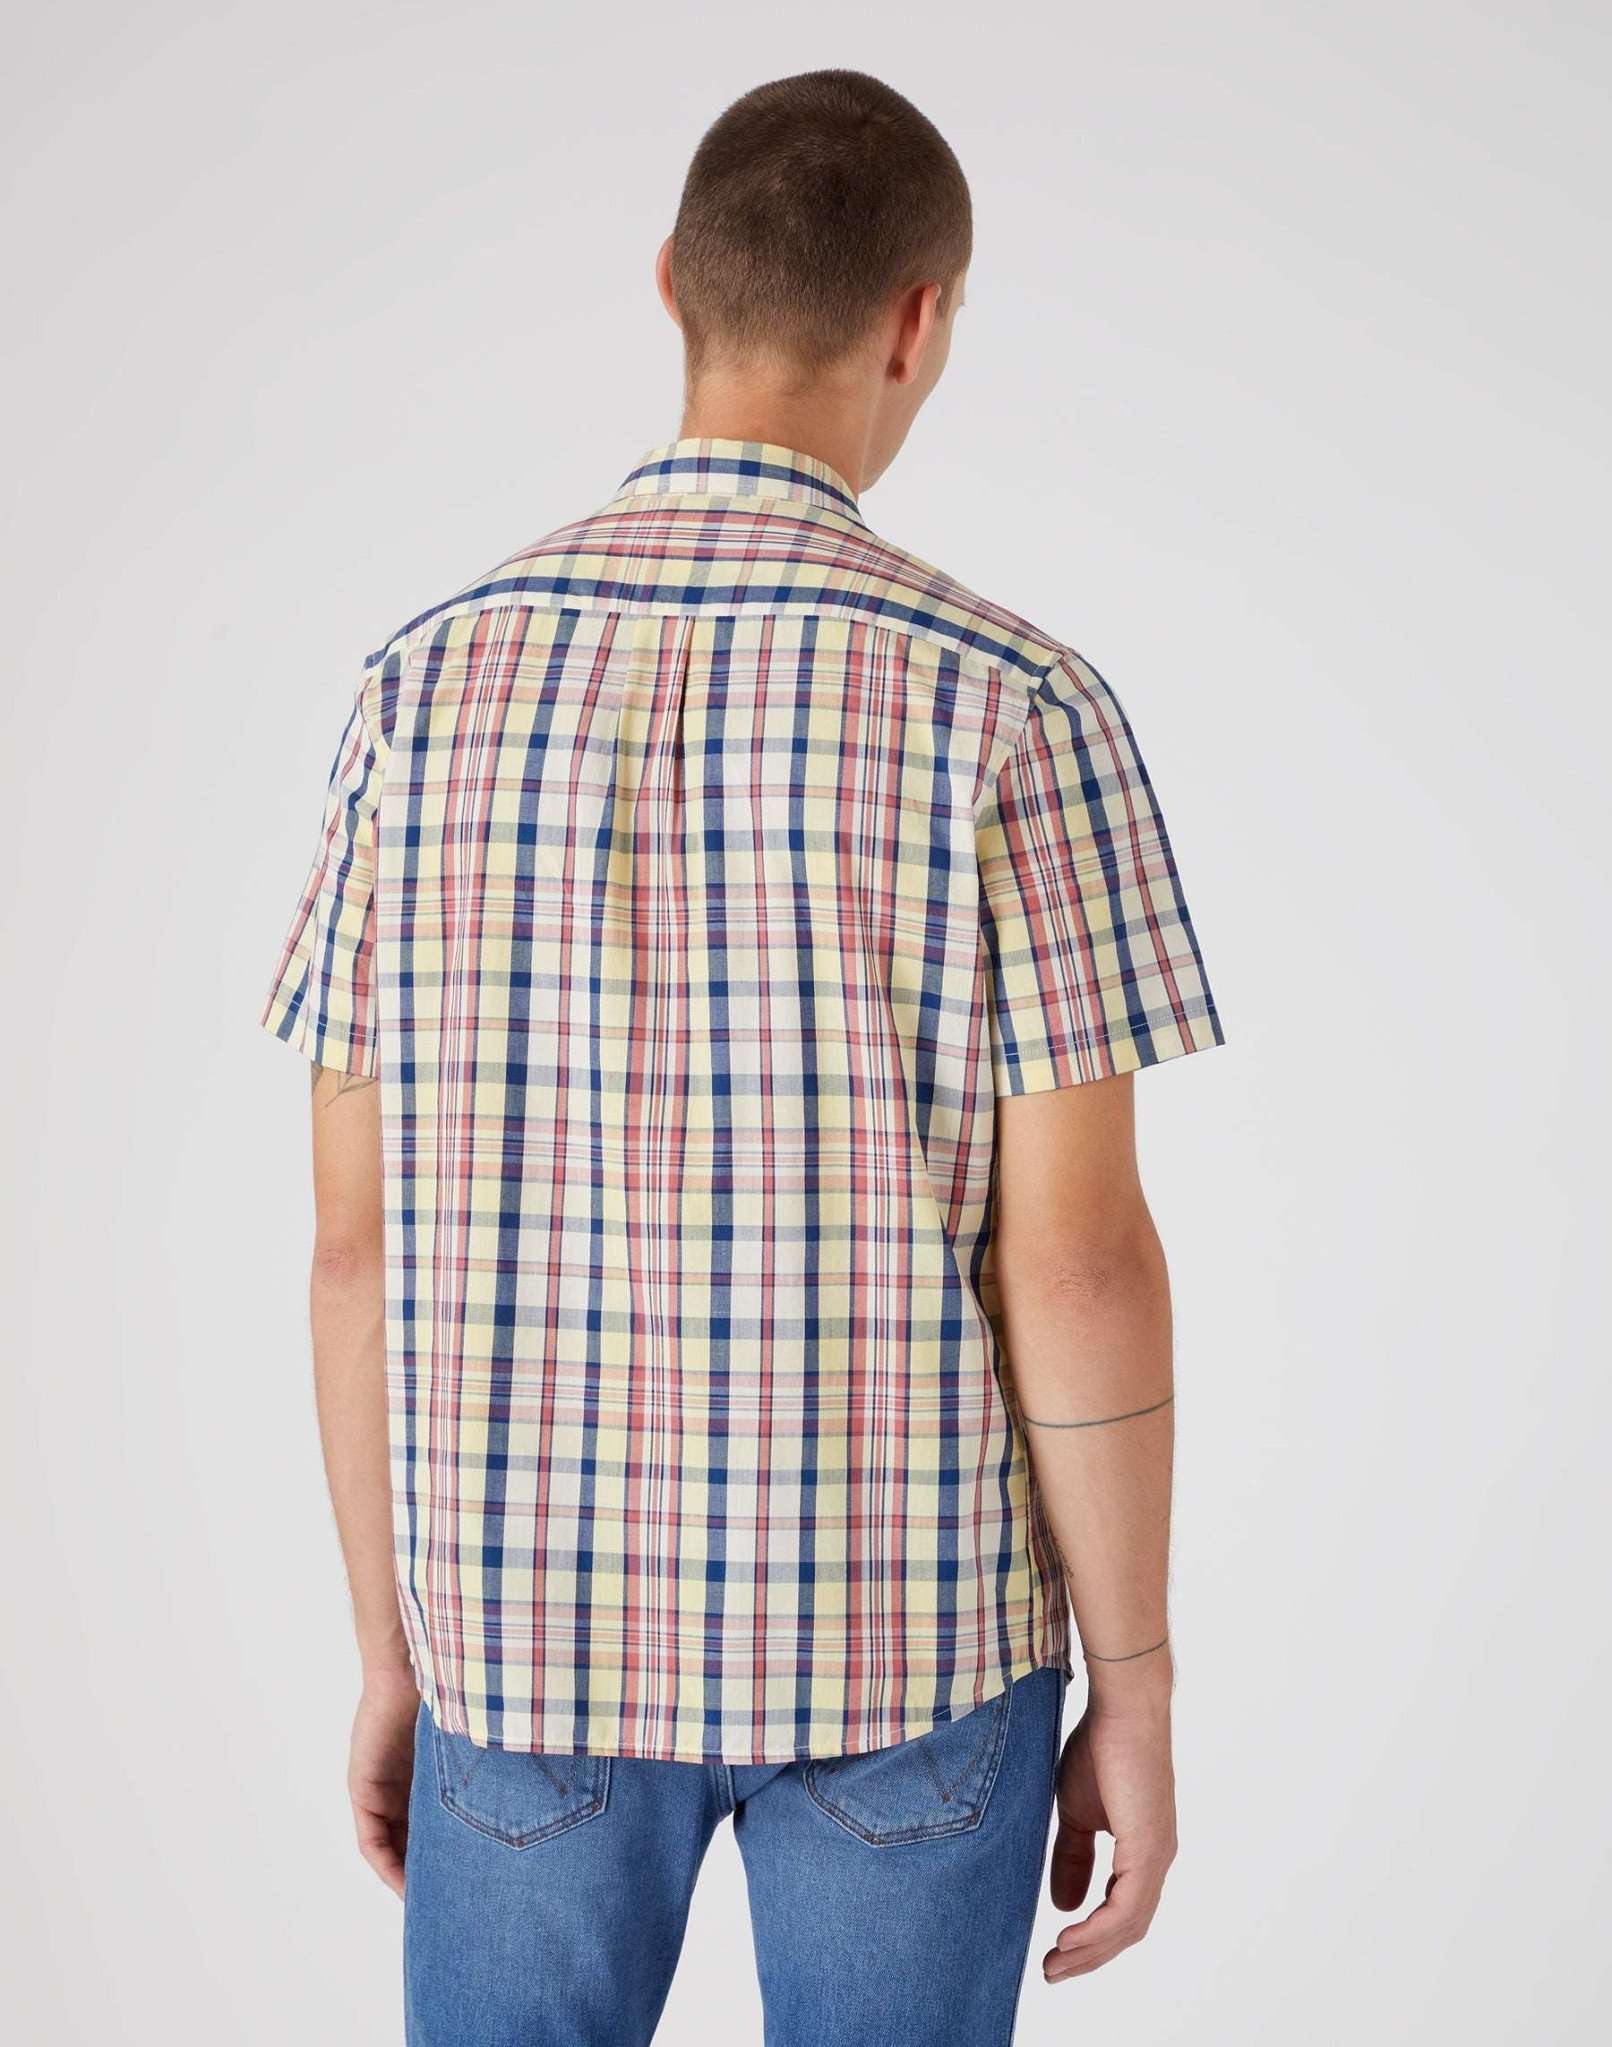 Kurzarm One Pocket Shirt in Pineapple Slice Hemden Wrangler   